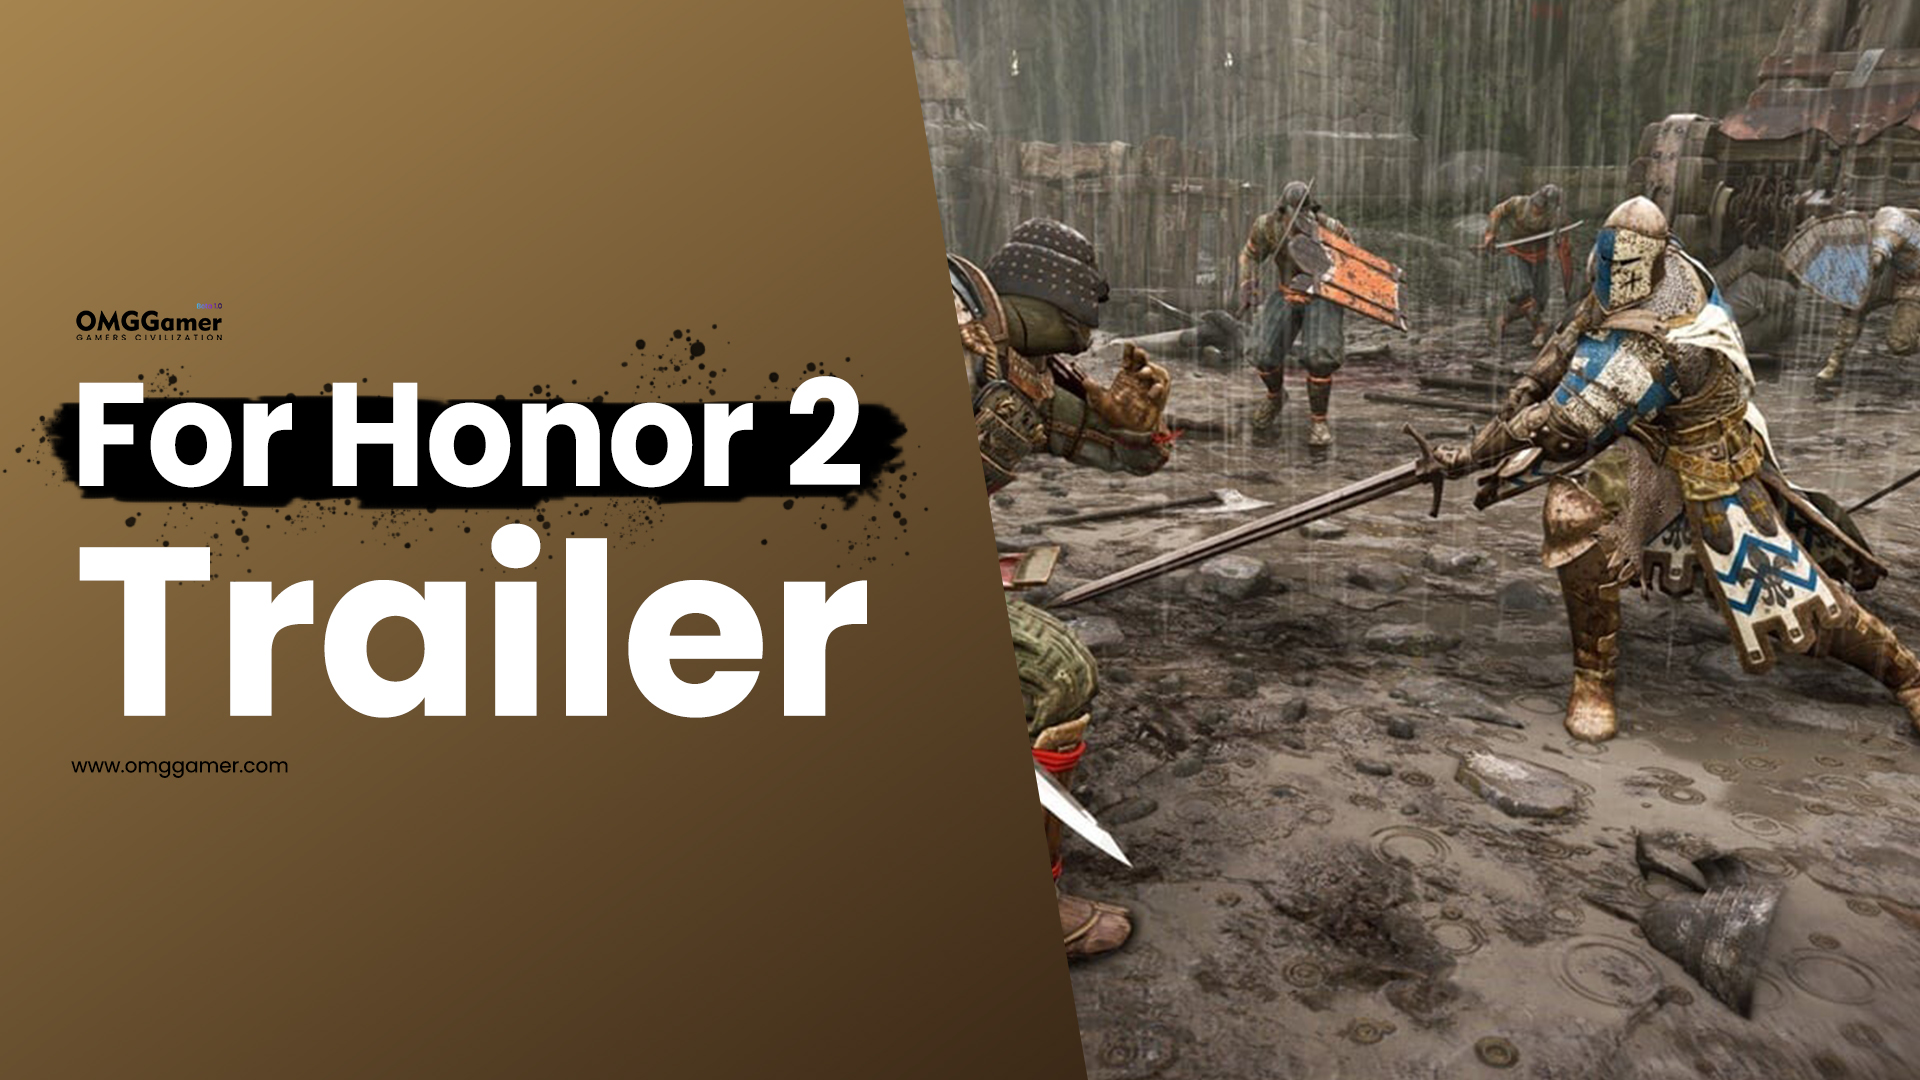 For Honor 2 Trailer